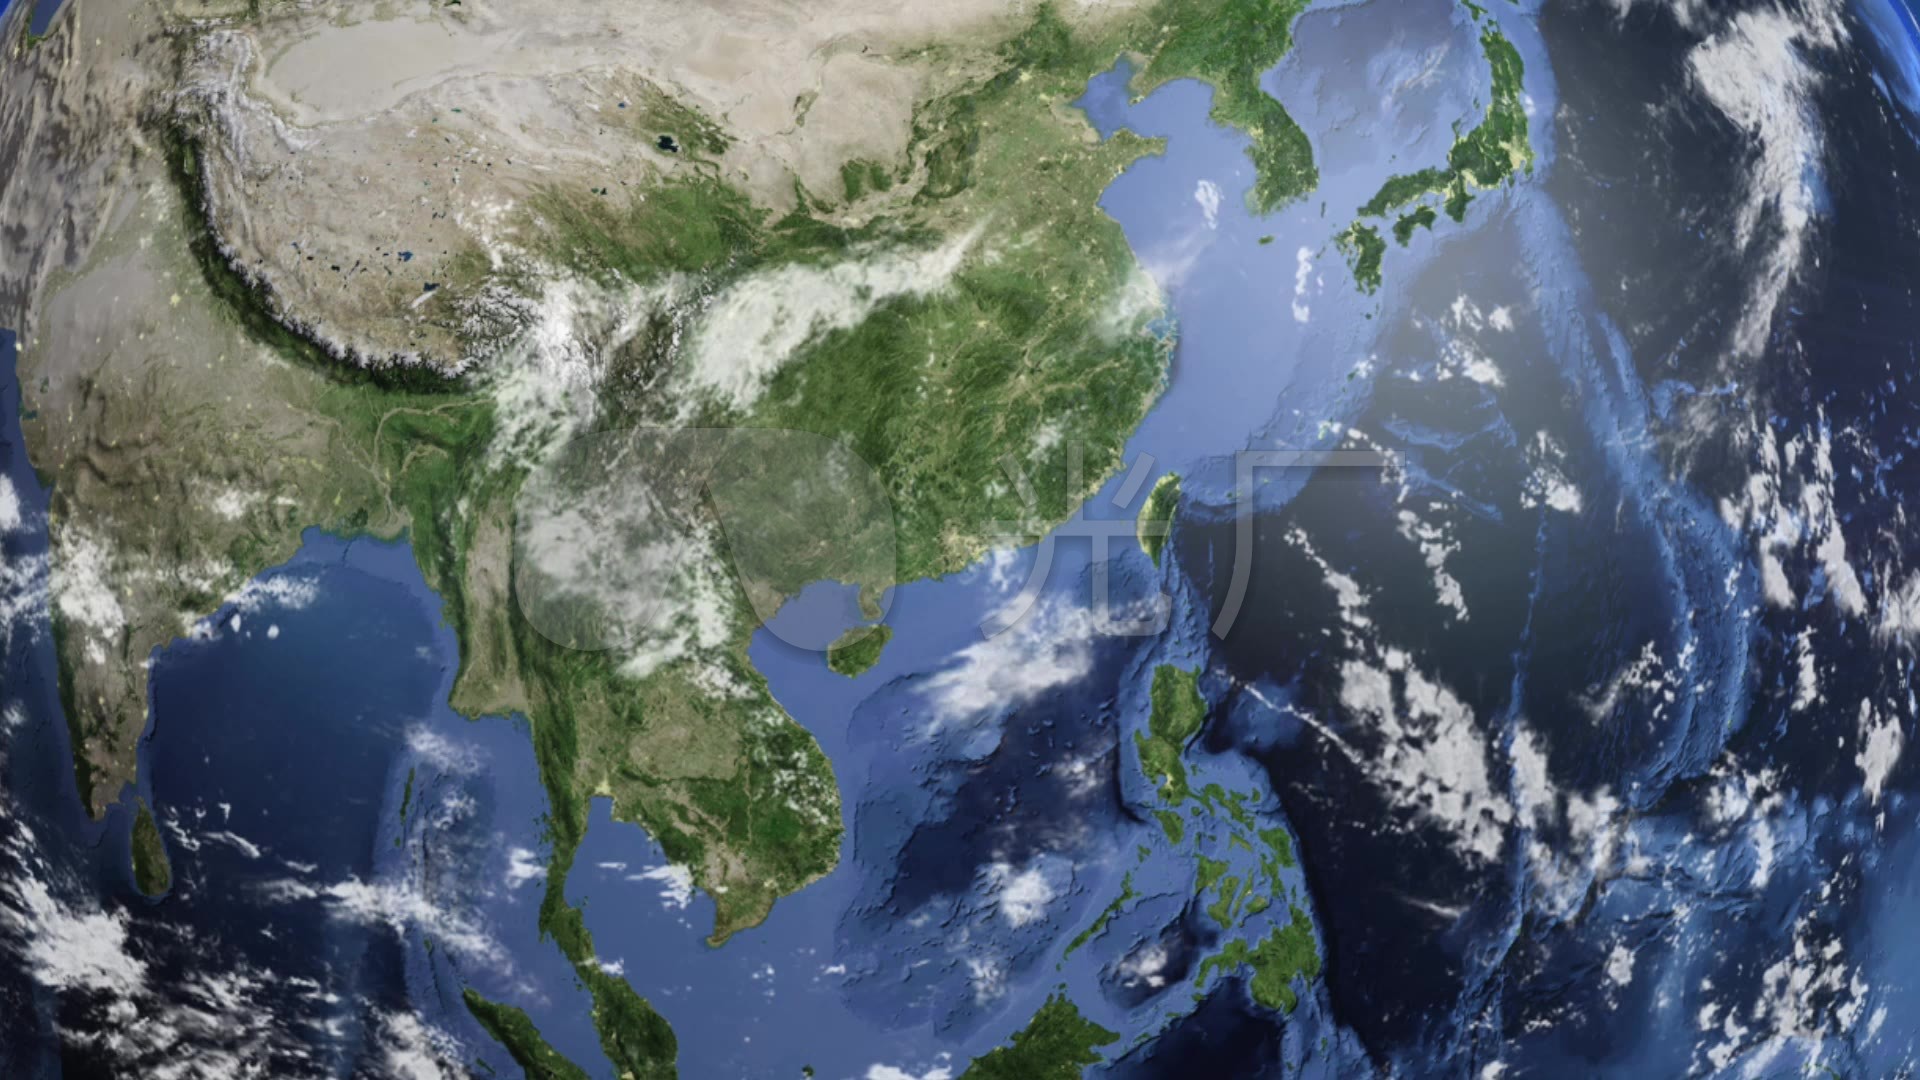 谷歌地球2020卫星地图更新了，附最新卫星地图下载方法-高清卫星地图、GIS行业服务-BIGEMAP